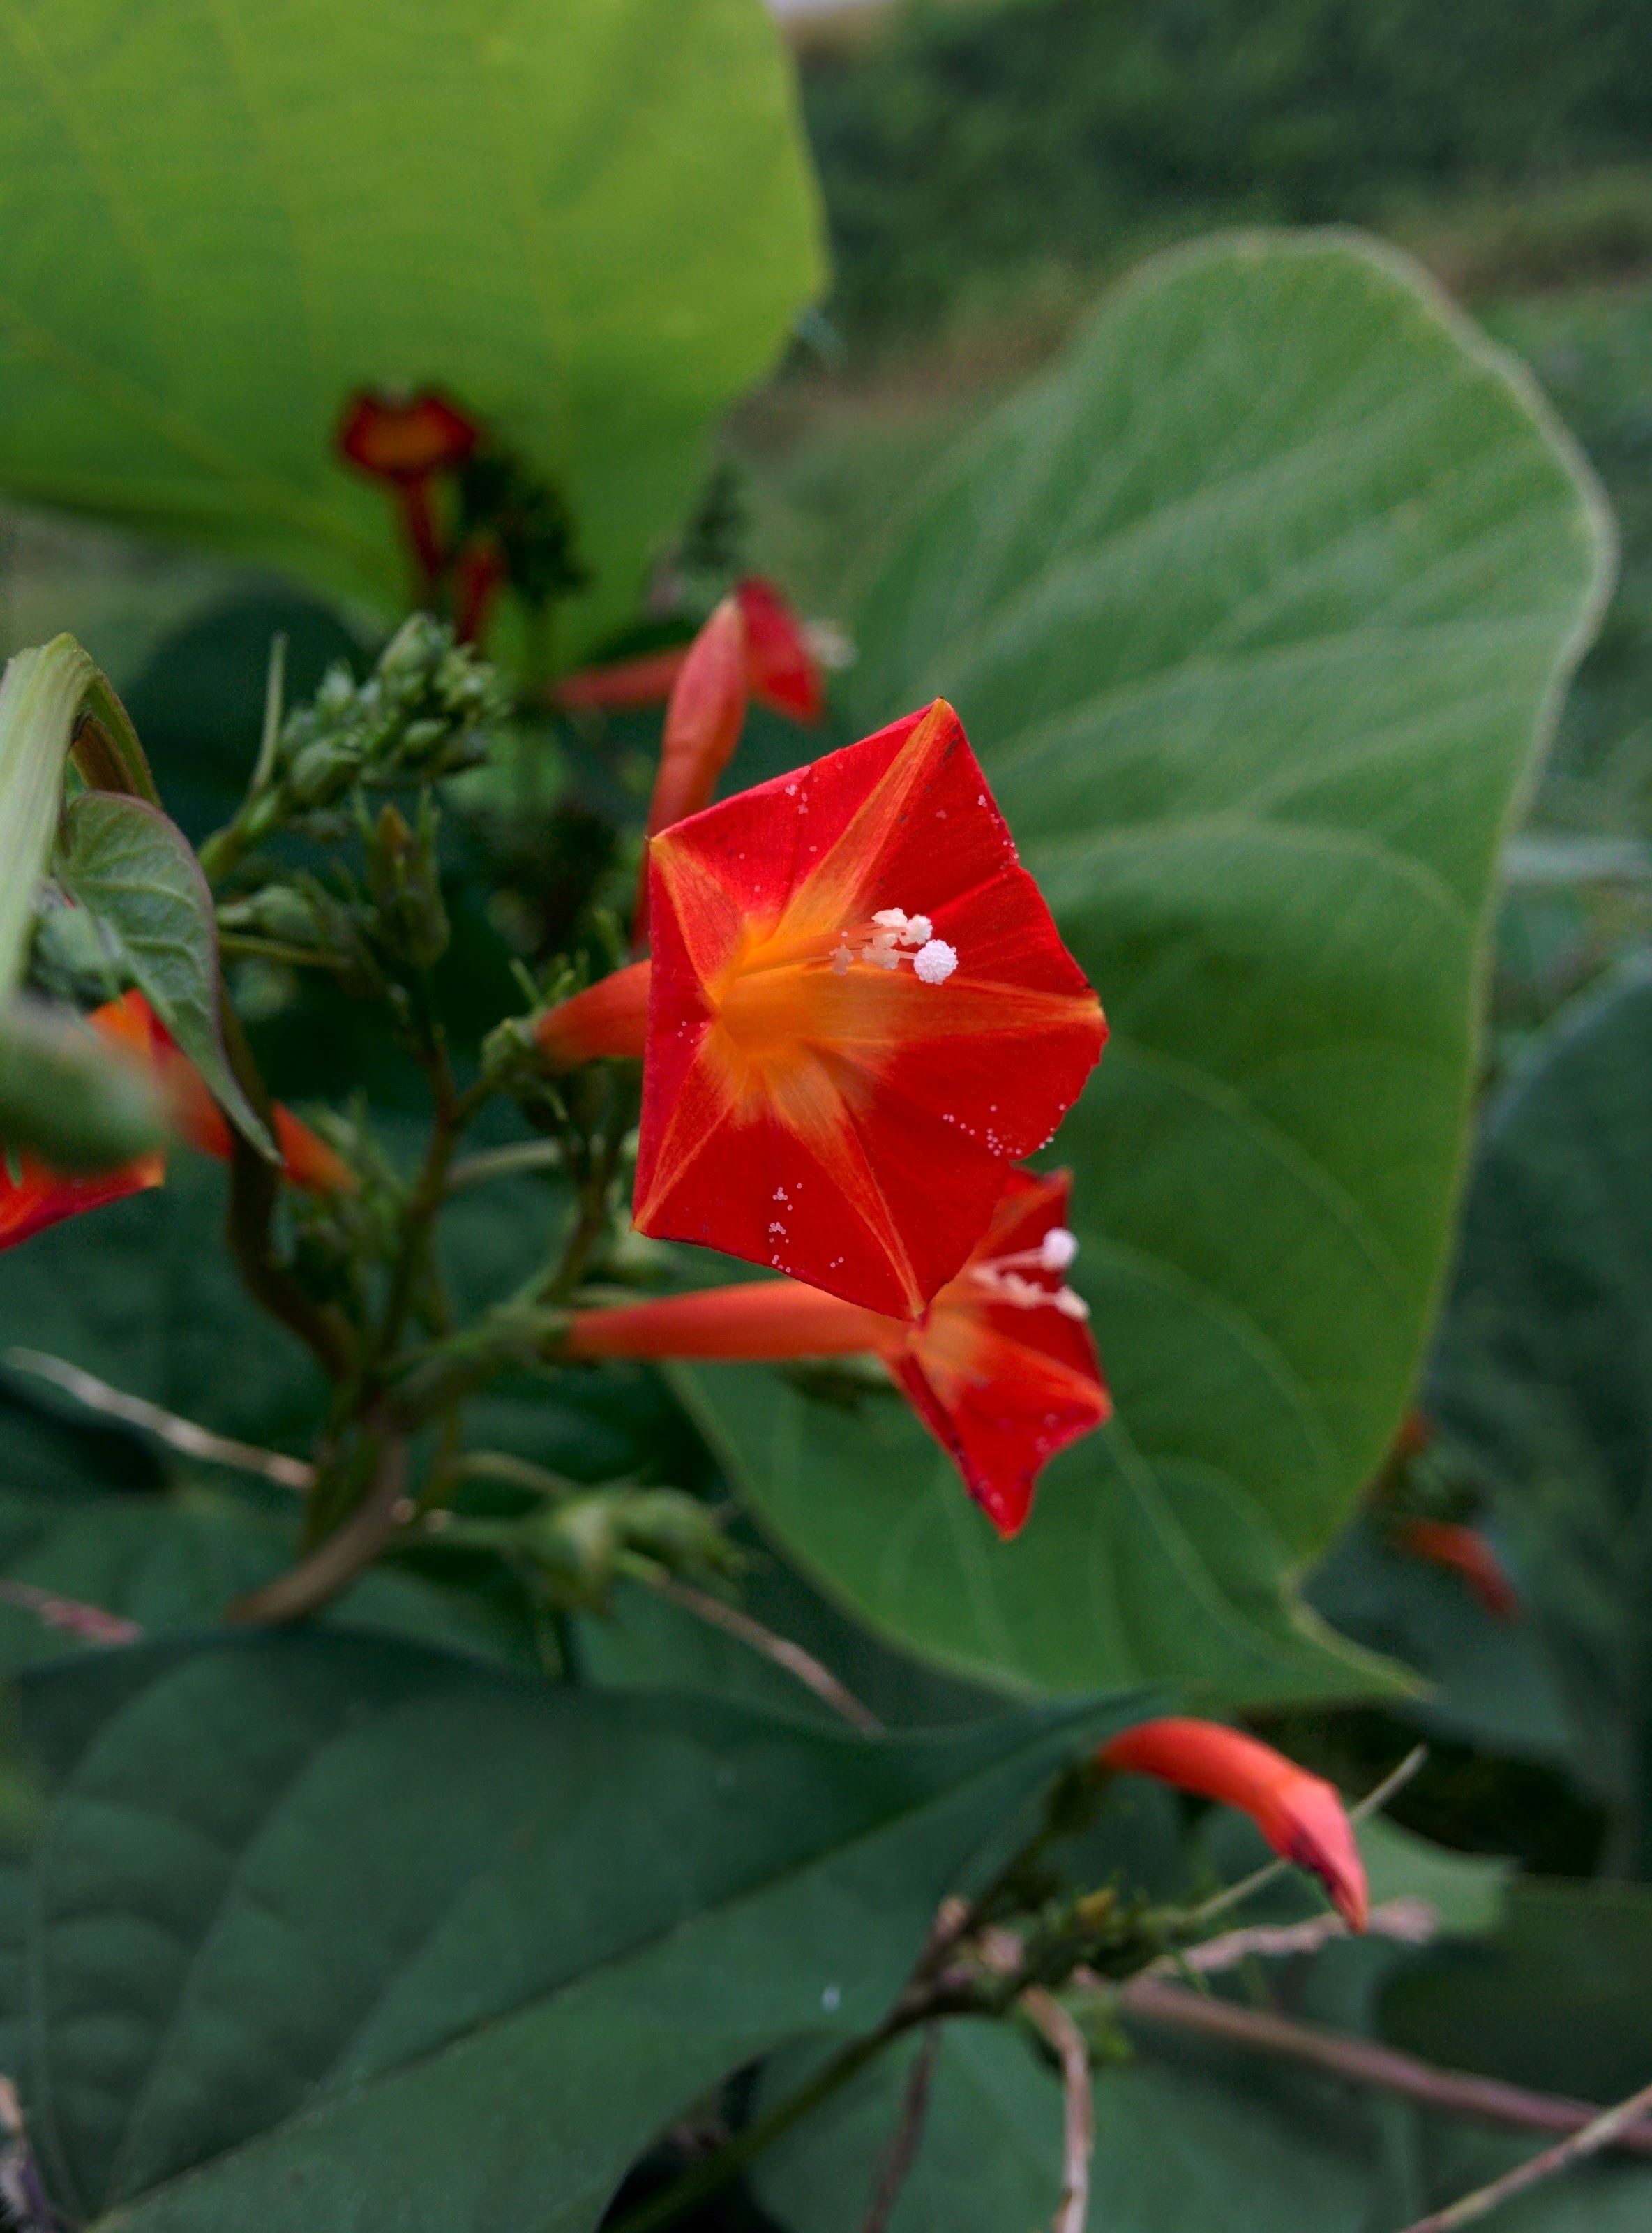 IMG_20150930_125408.jpg 오른쪽돌이 덩굴식물의 빨간 주황색 꽃, 둥근잎유홍초